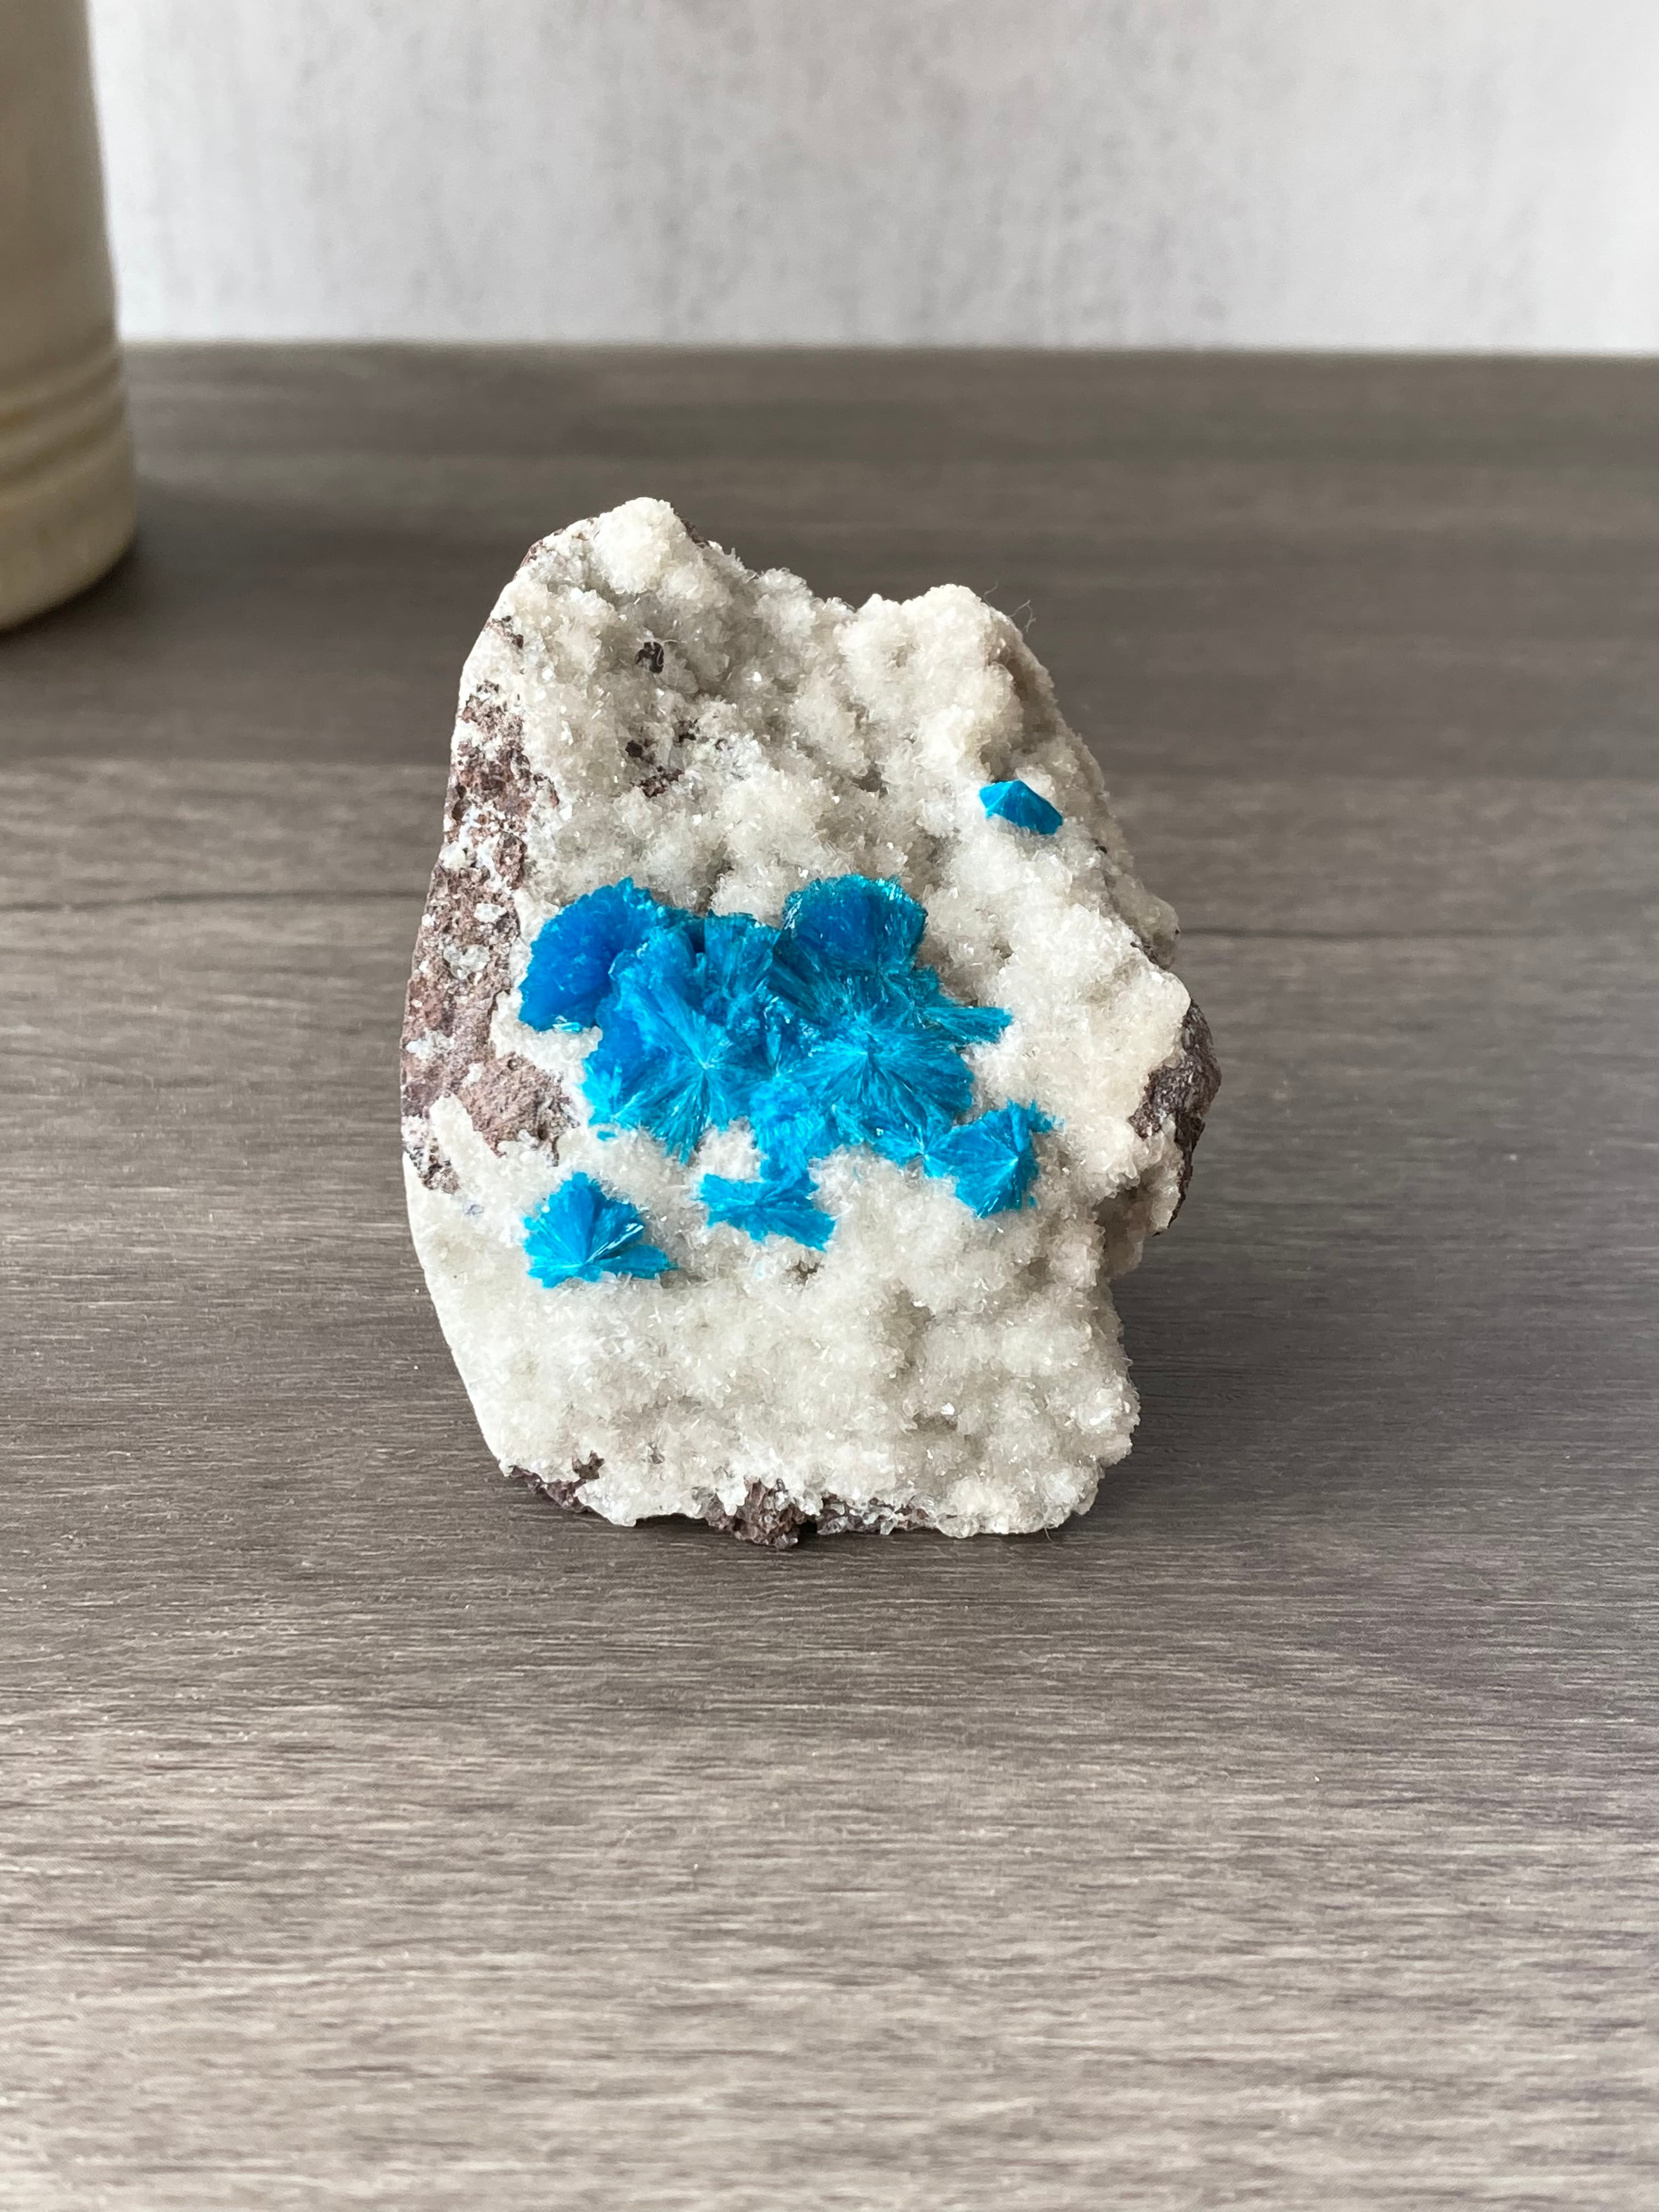 コバルトブルー ♡ カバンサイト / カバンシ石 / 鉱石 | Crystal Garden ✧Crystals & Minerals Shop✧  powered by BASE